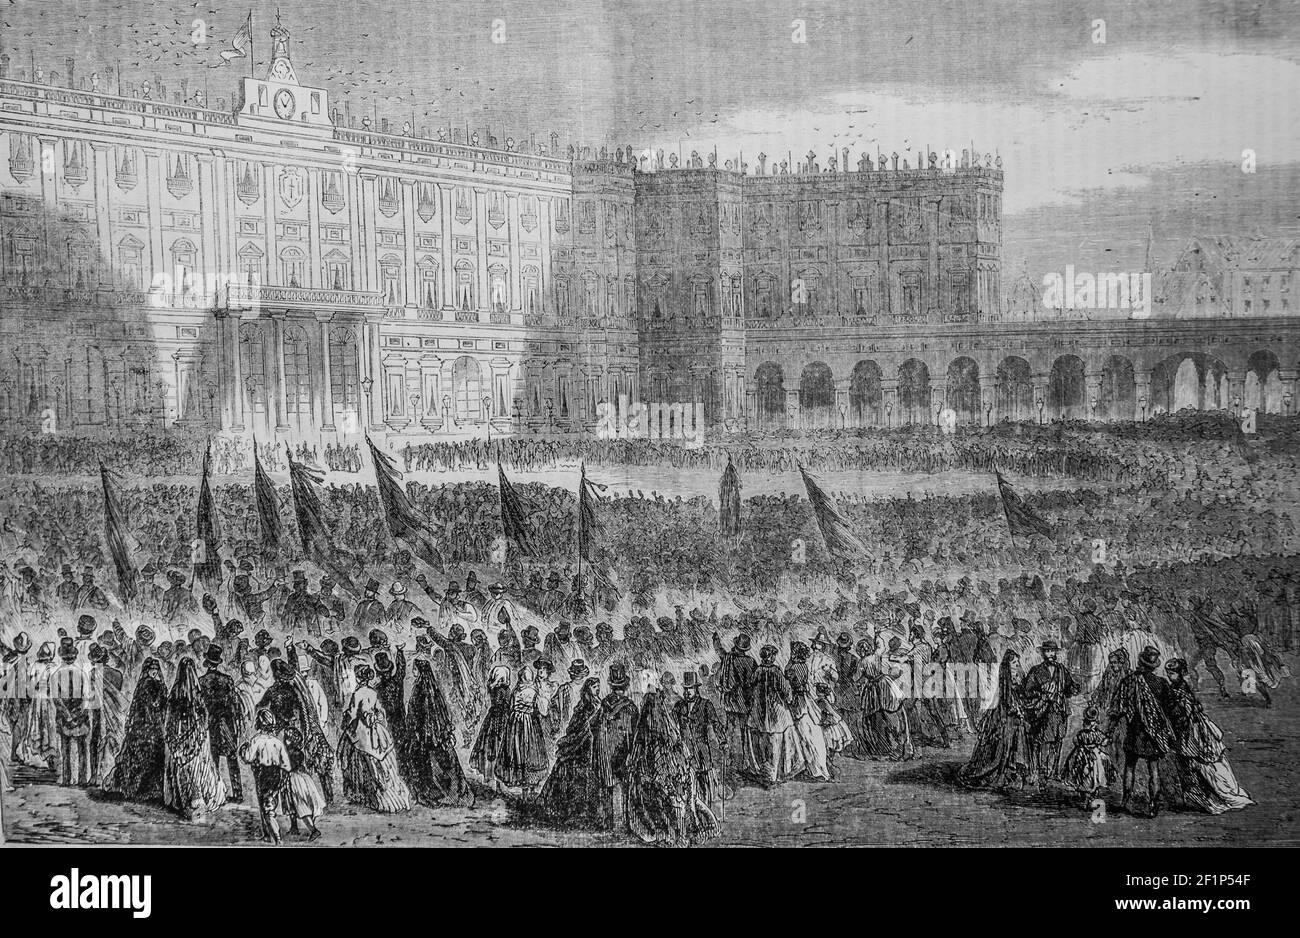 evenement d'espagne la Place du palais royale a madrid, l'univers illuste,editeur michele Levy 1869 Stockfoto